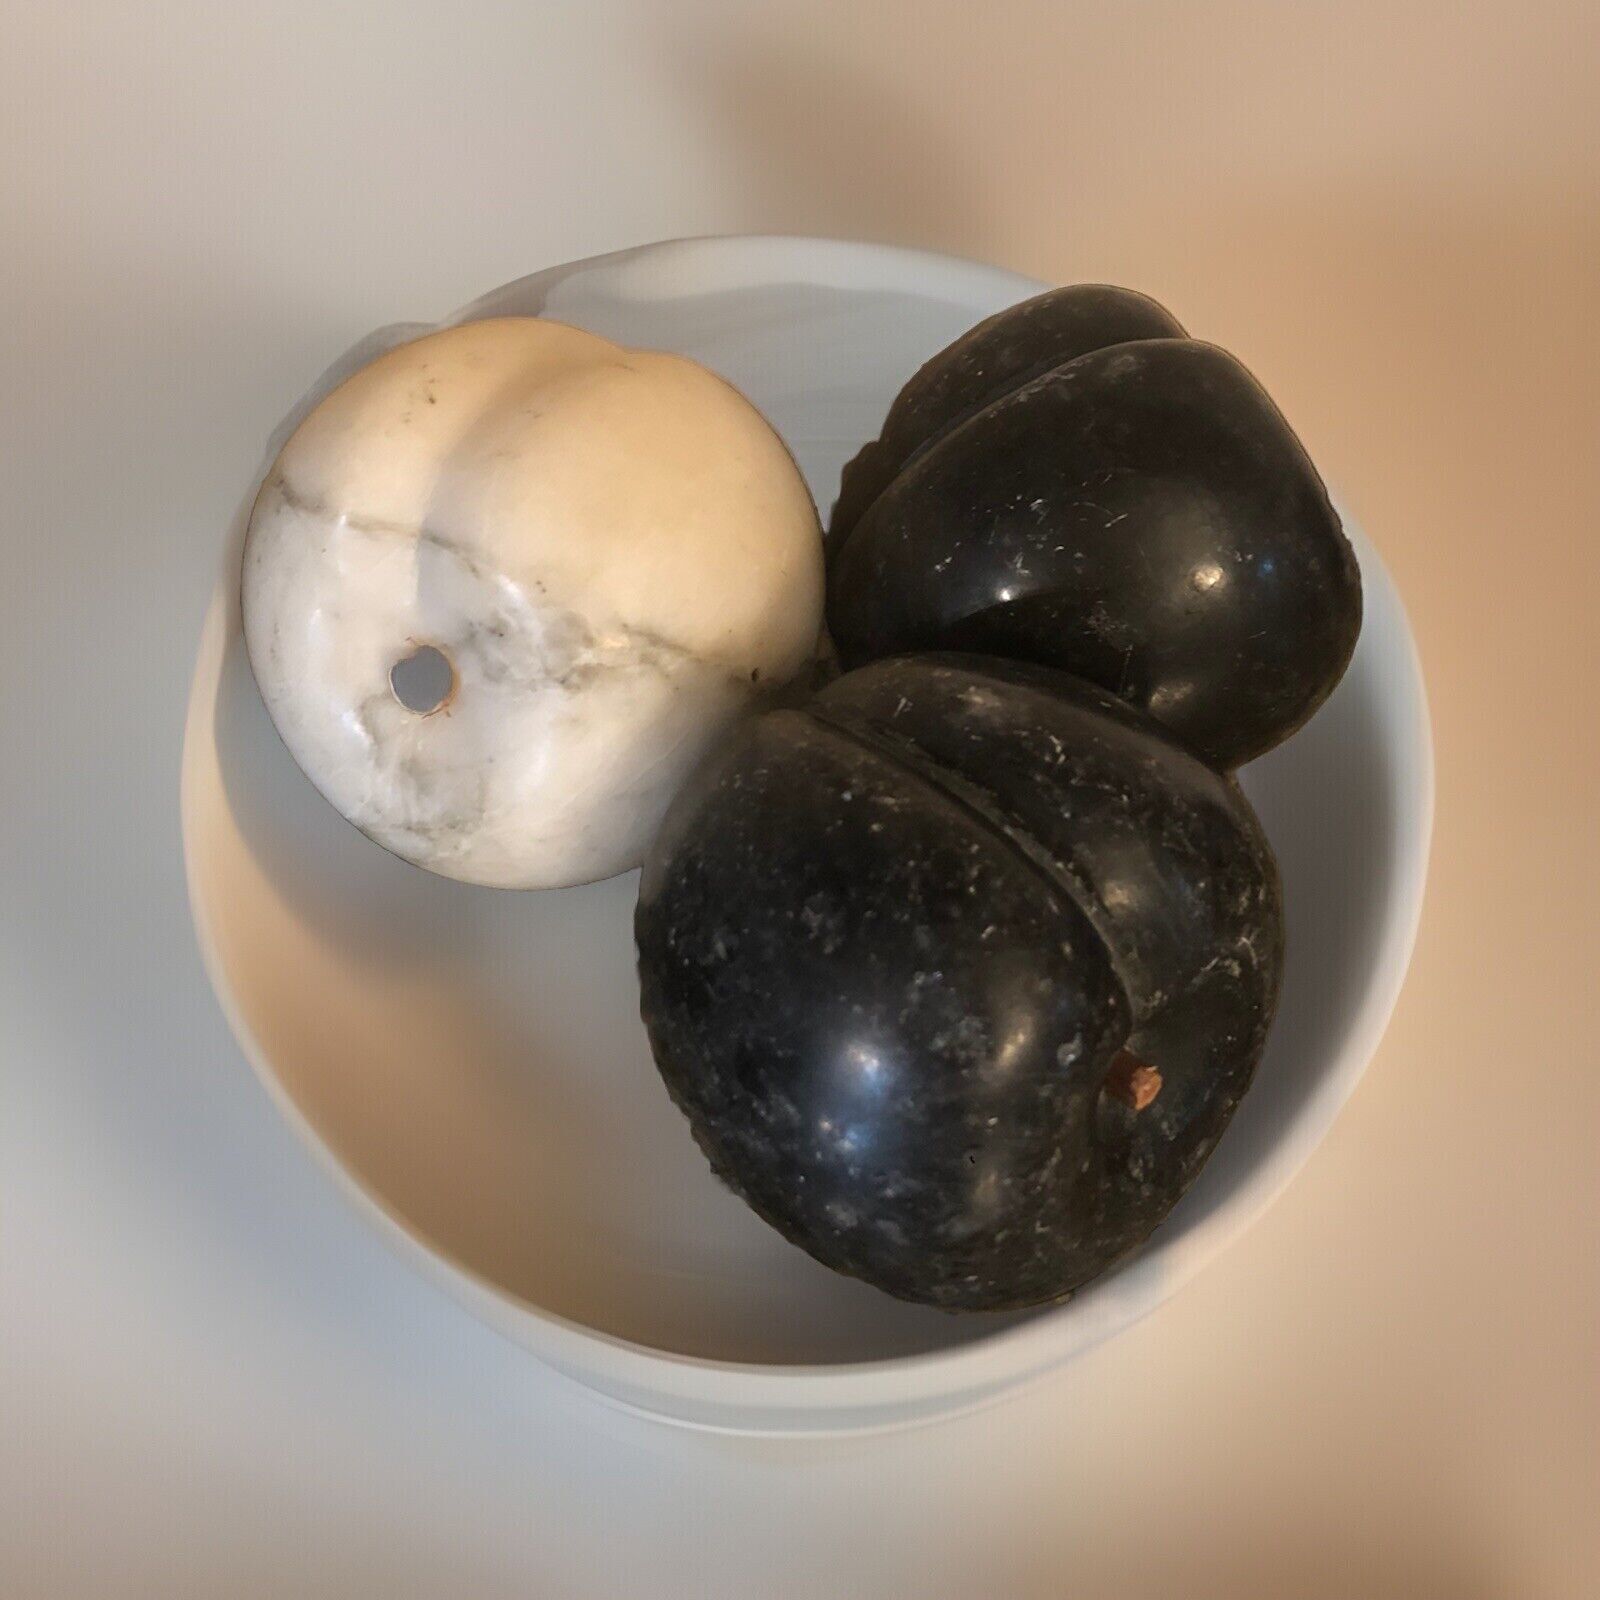 VTG Italian Solid Marble Black&White Carved PeachStonefruit wWoodStem RARE Heavy